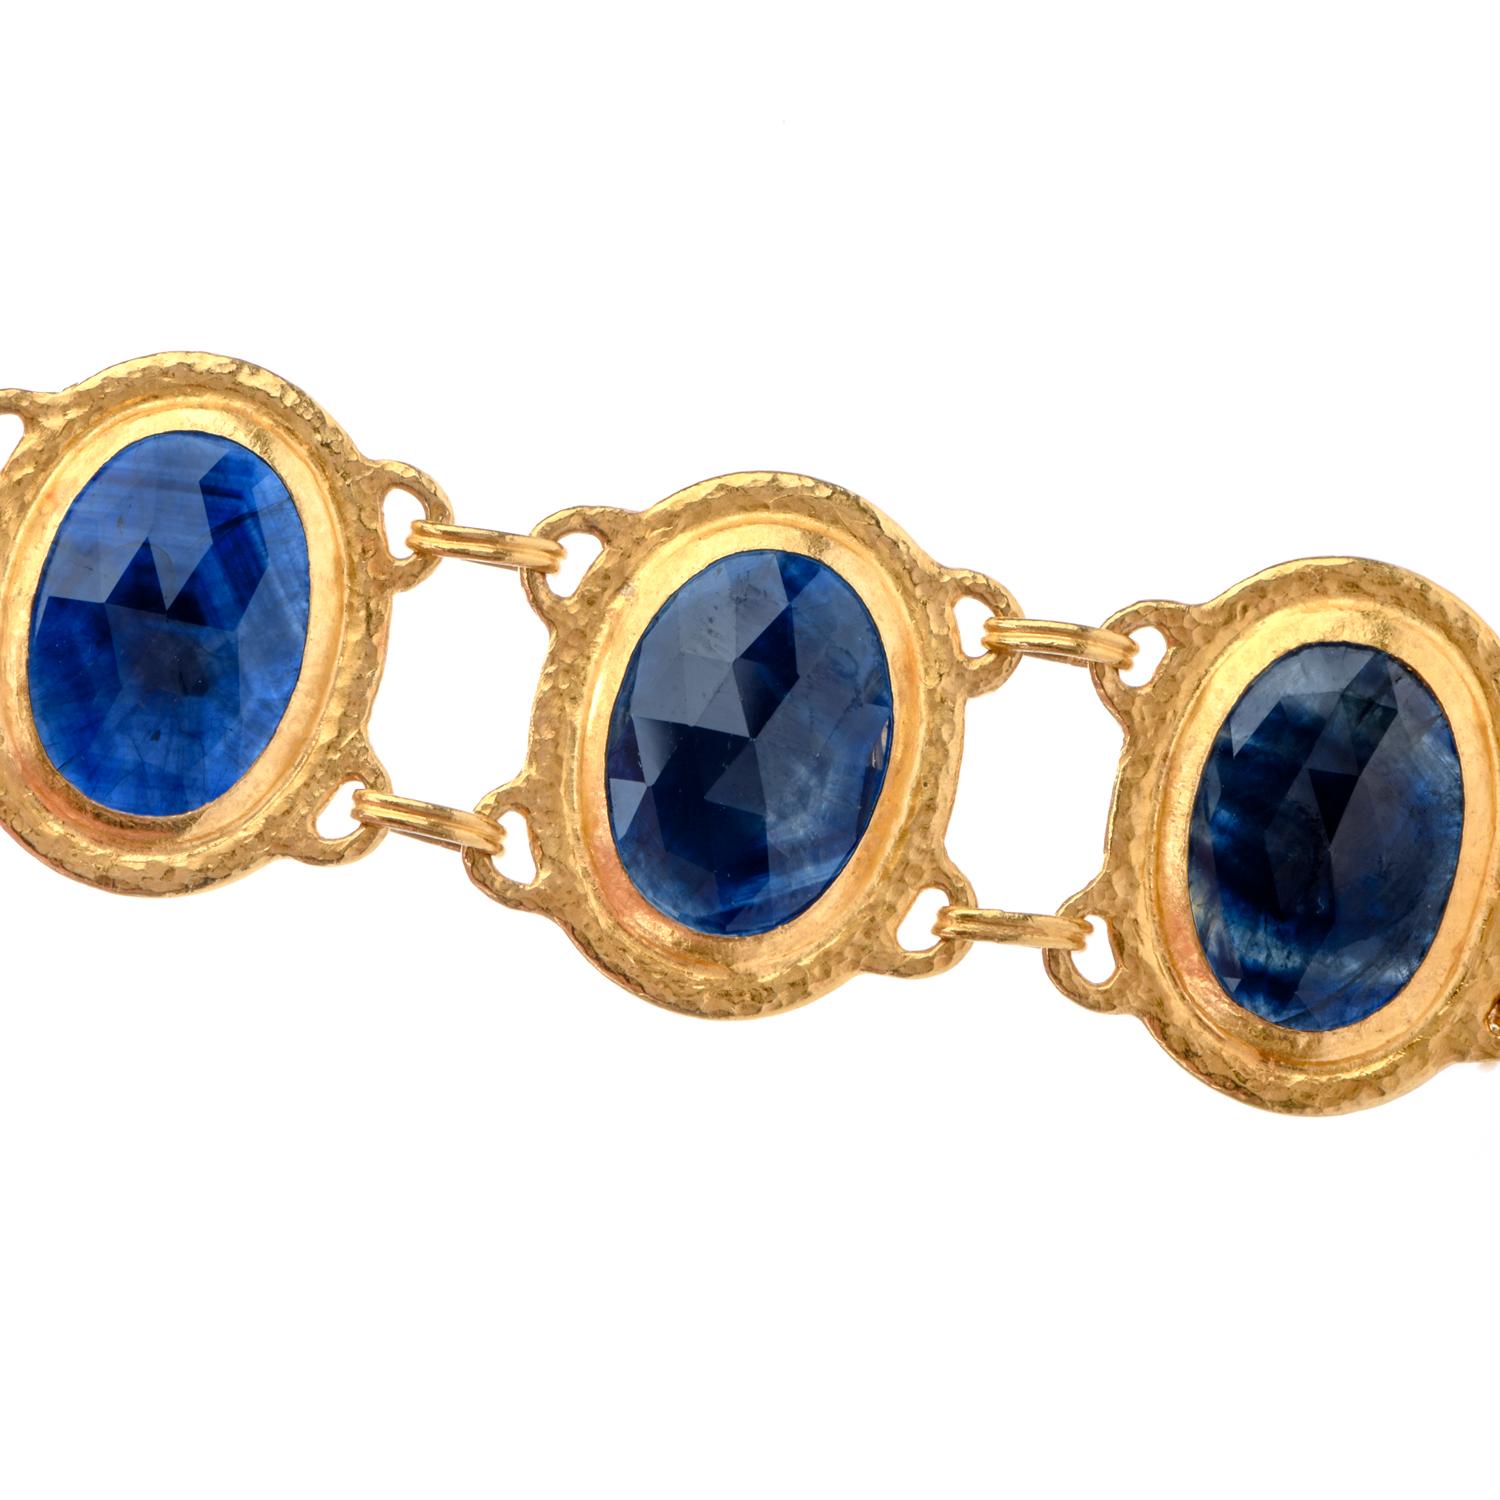 Oval Cut Gurhan 24 Karat Pure GoldBlue Sapphire Link Bracelet